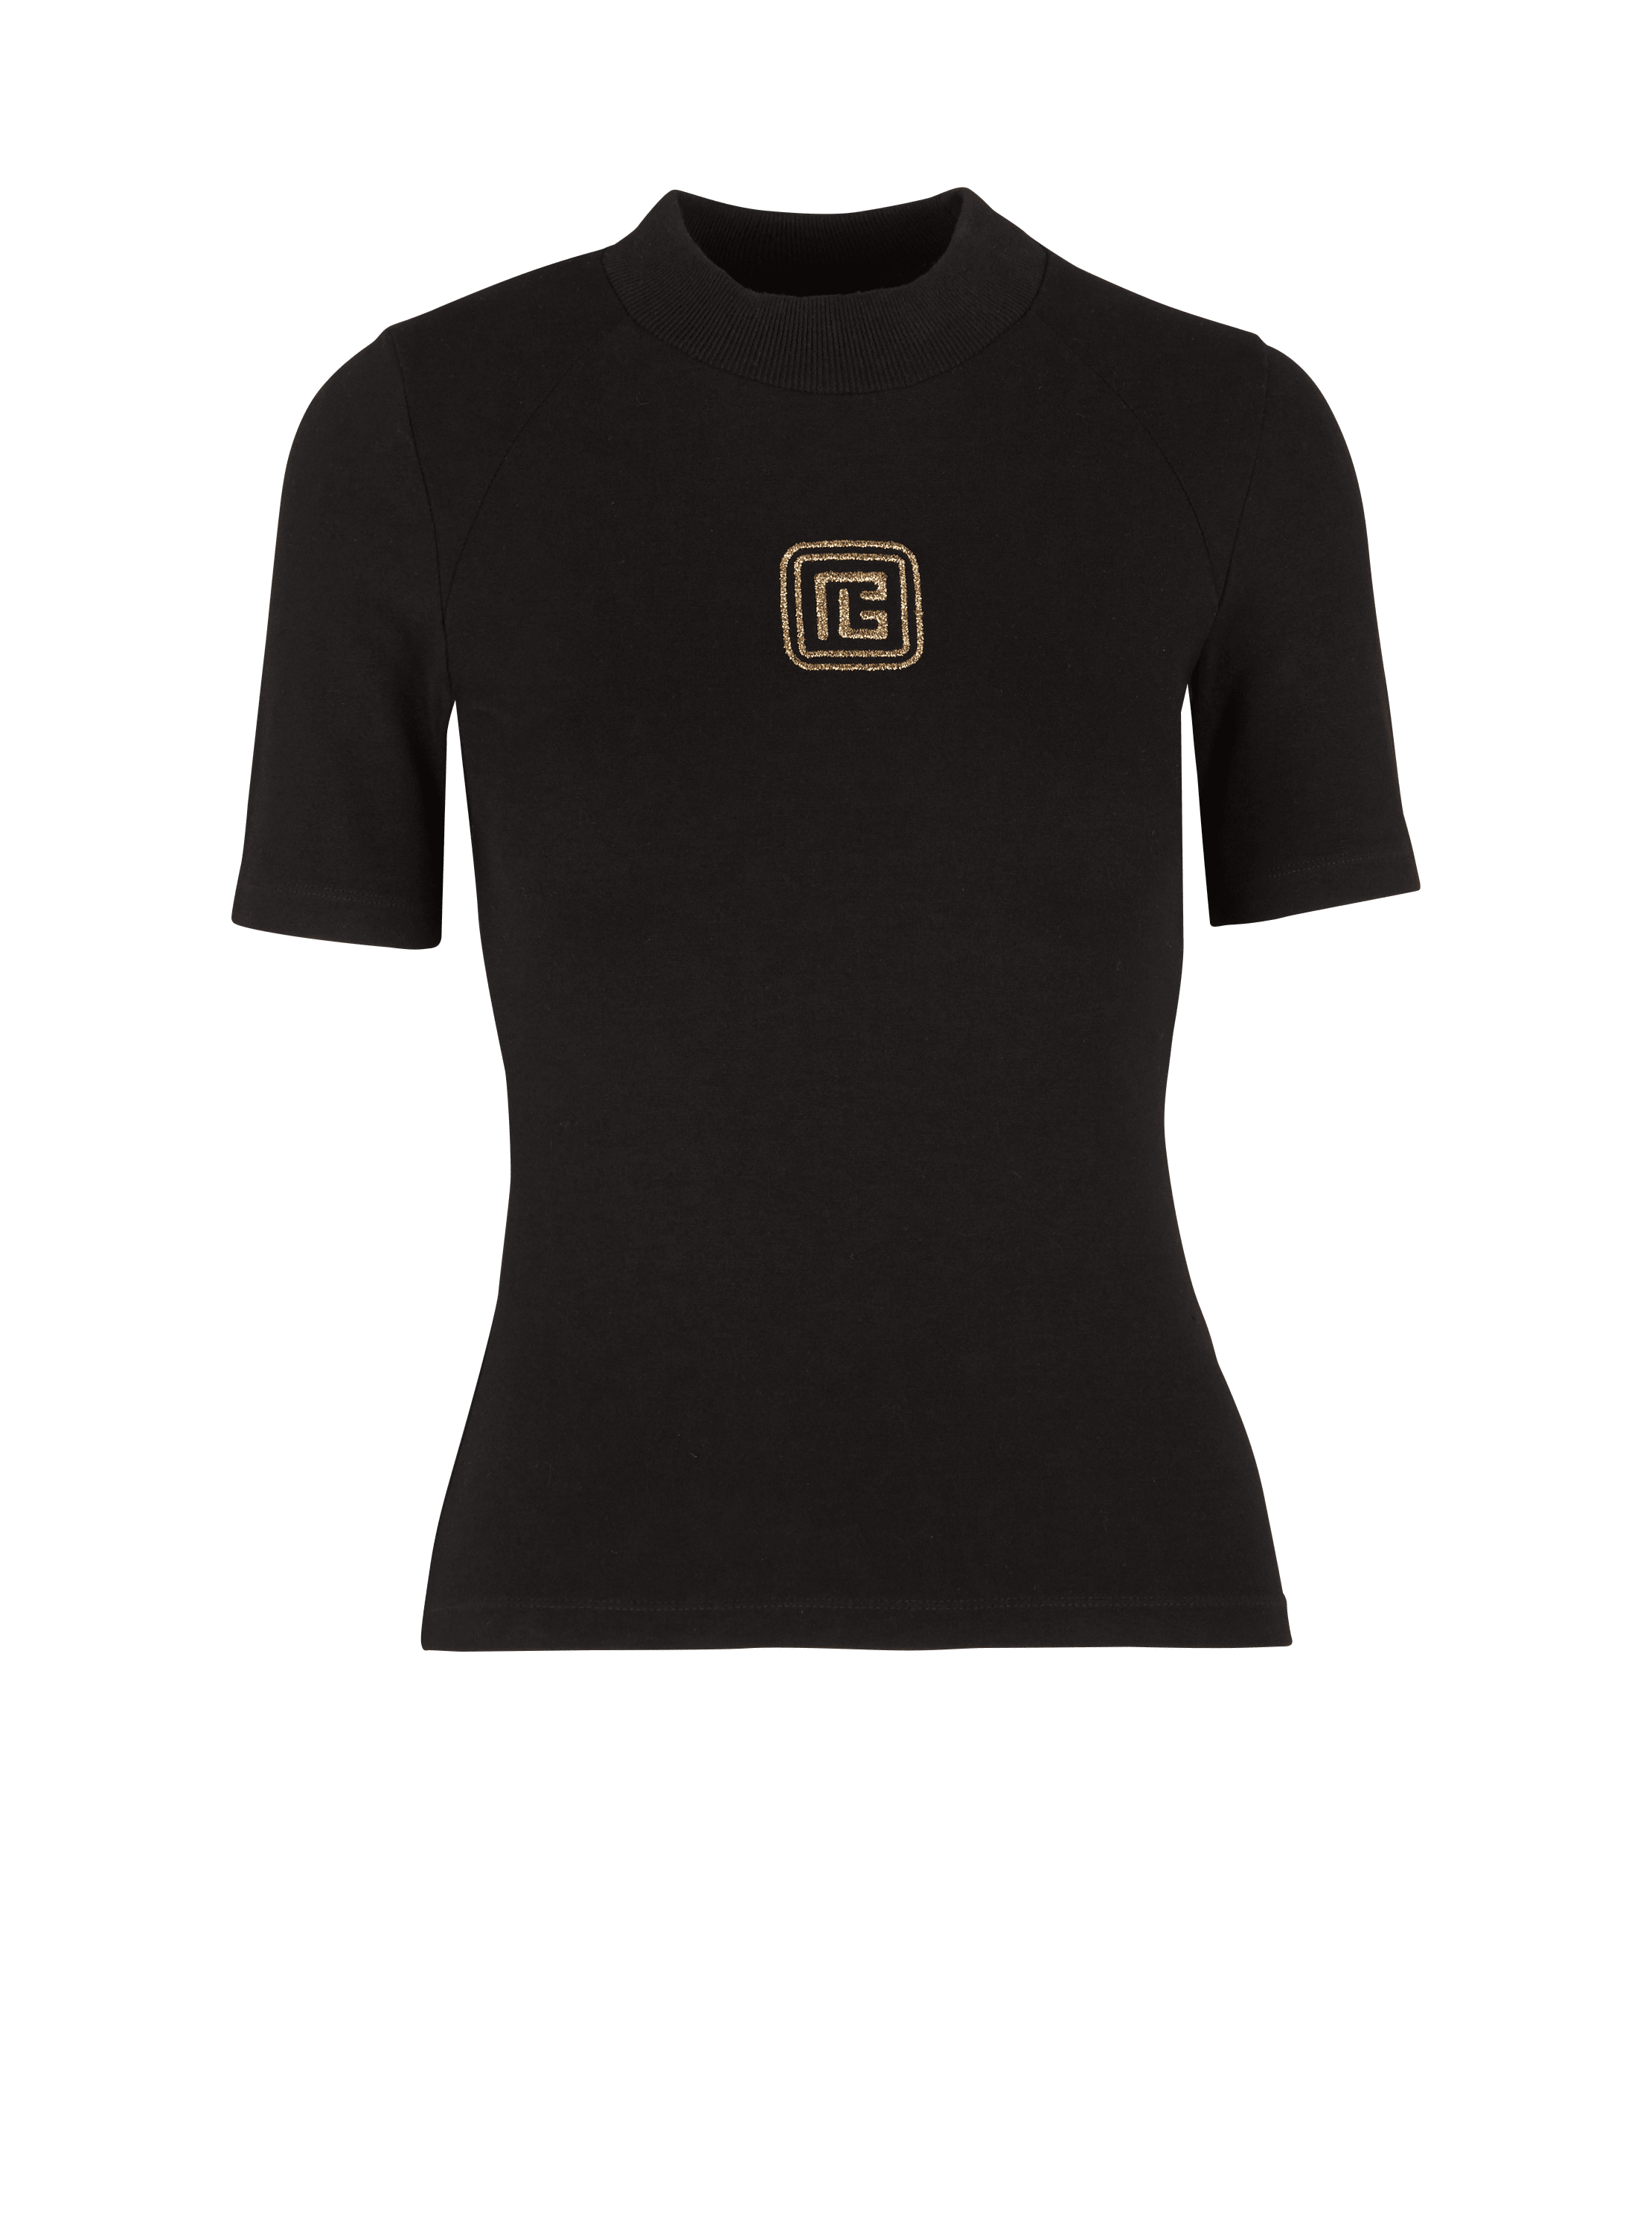 Retro PB T-shirt, black, hi-res